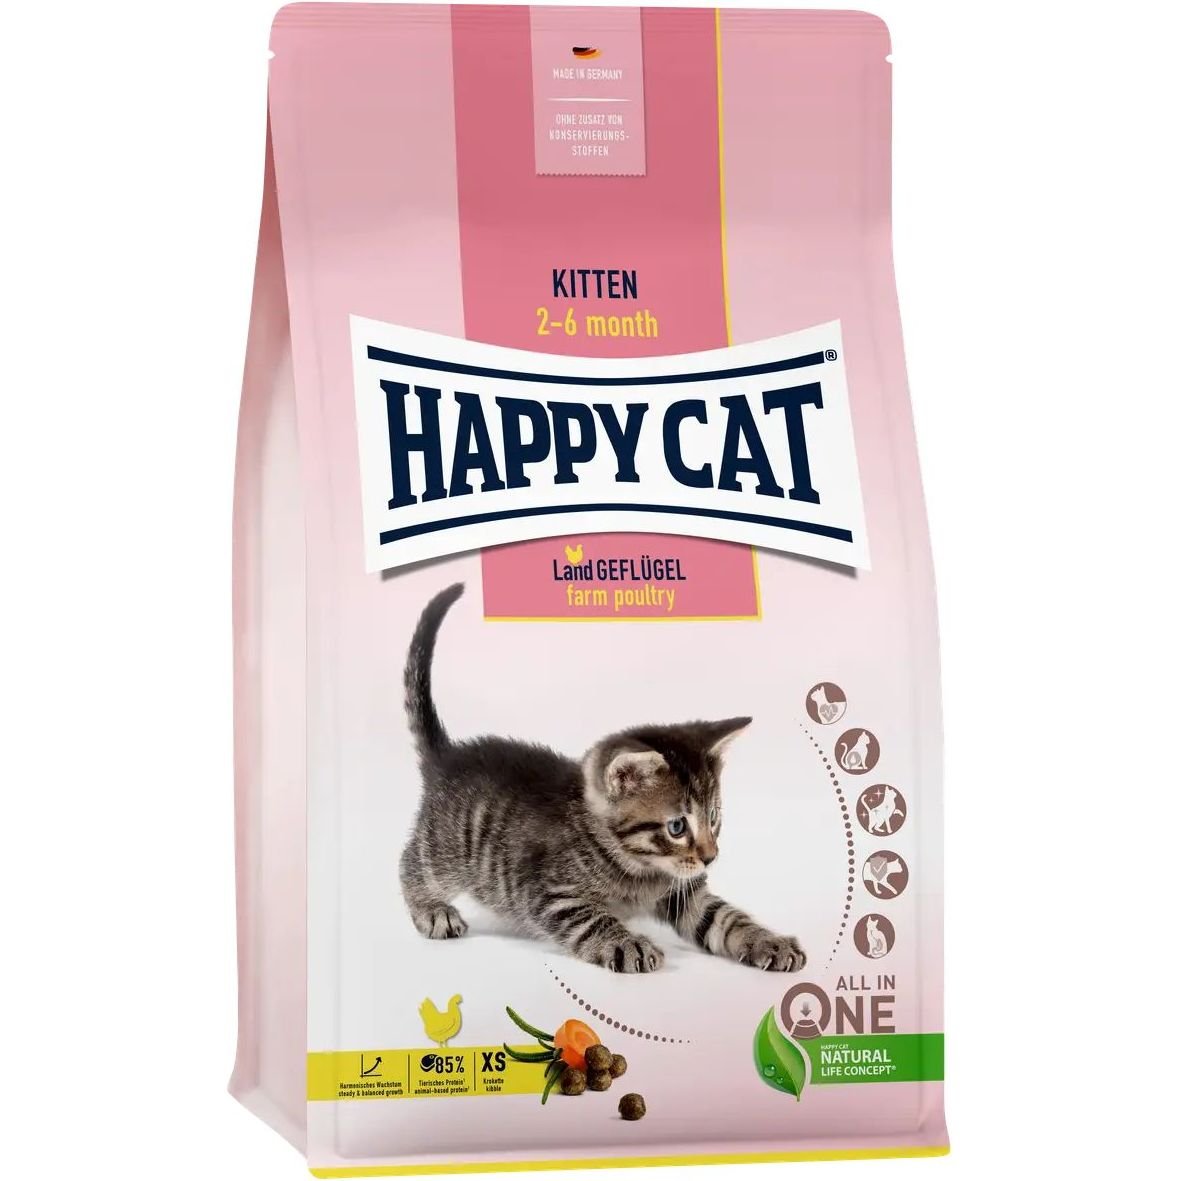 Сухий корм для кошенят Happy Cat Kitten Land Geflügel, зі смаком птиці, 1,3 кг - фото 1